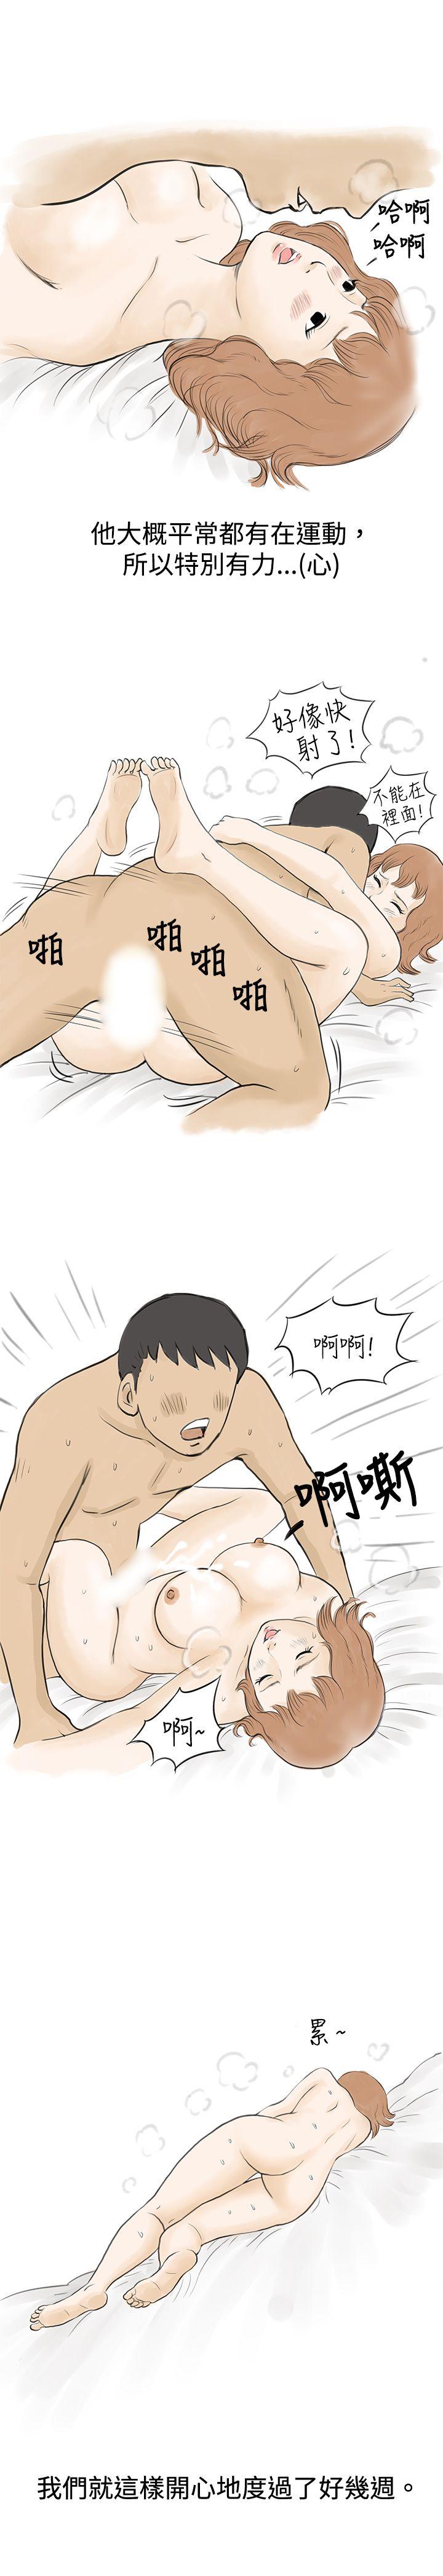 韩国污漫画 秘密Story 与哥哥的朋友在租屋...(下) 8